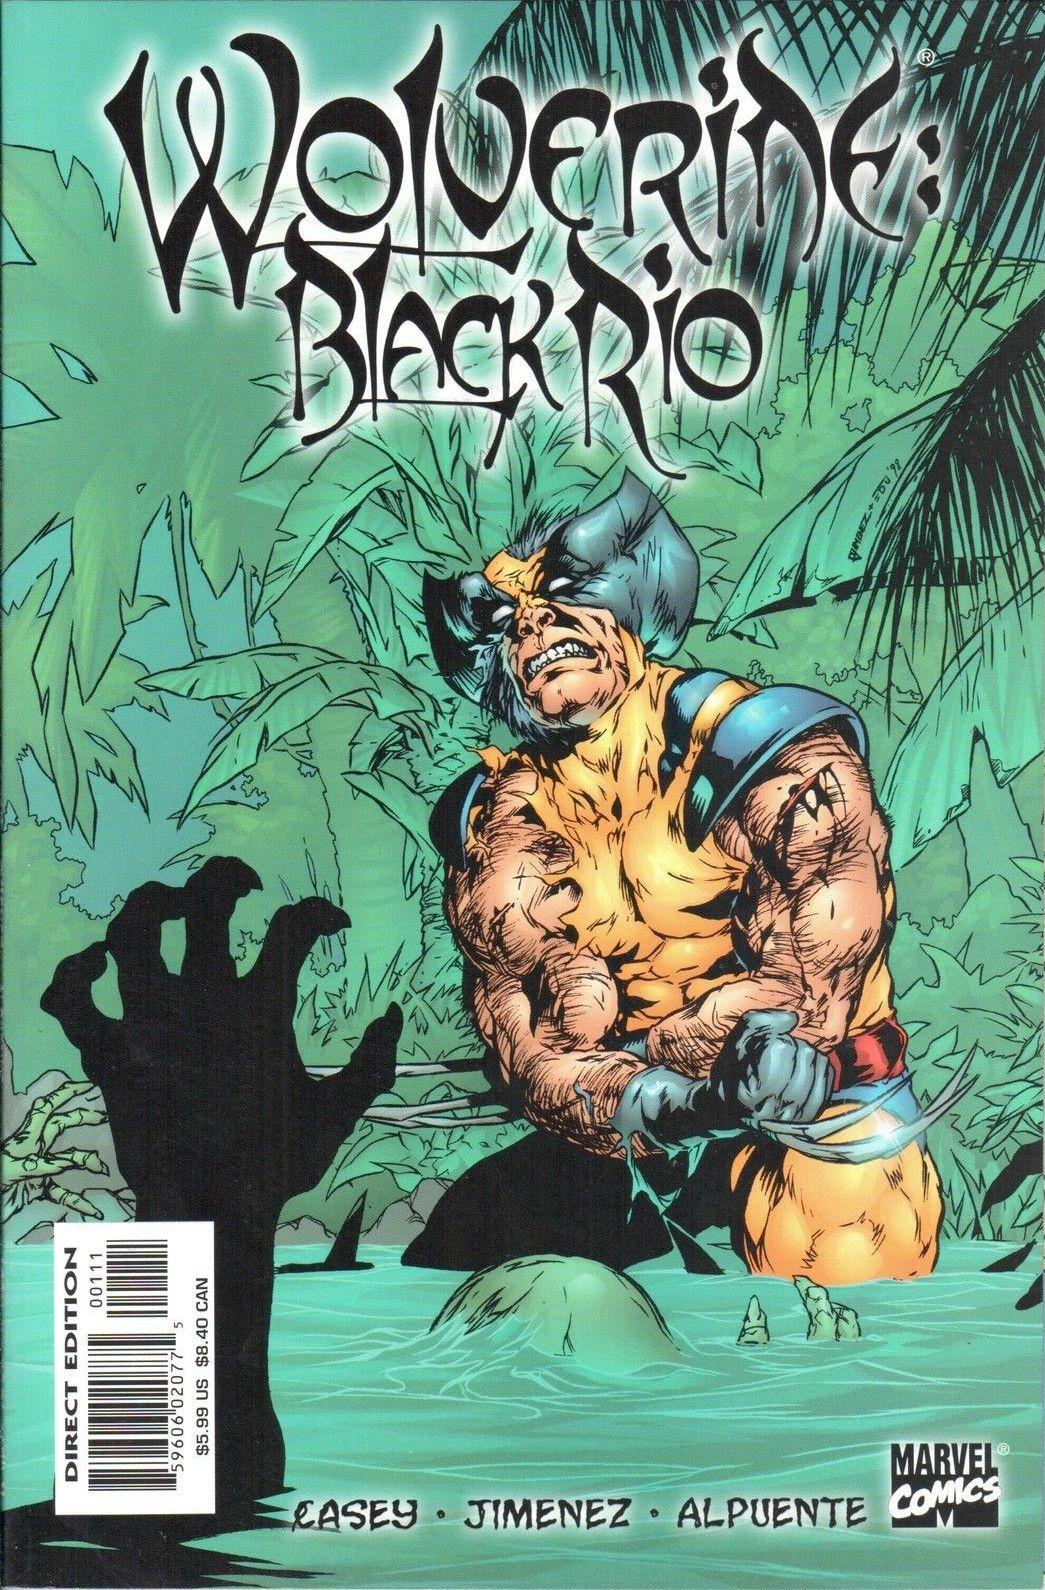 Wolverine: Black Rio Vol. 1 #1